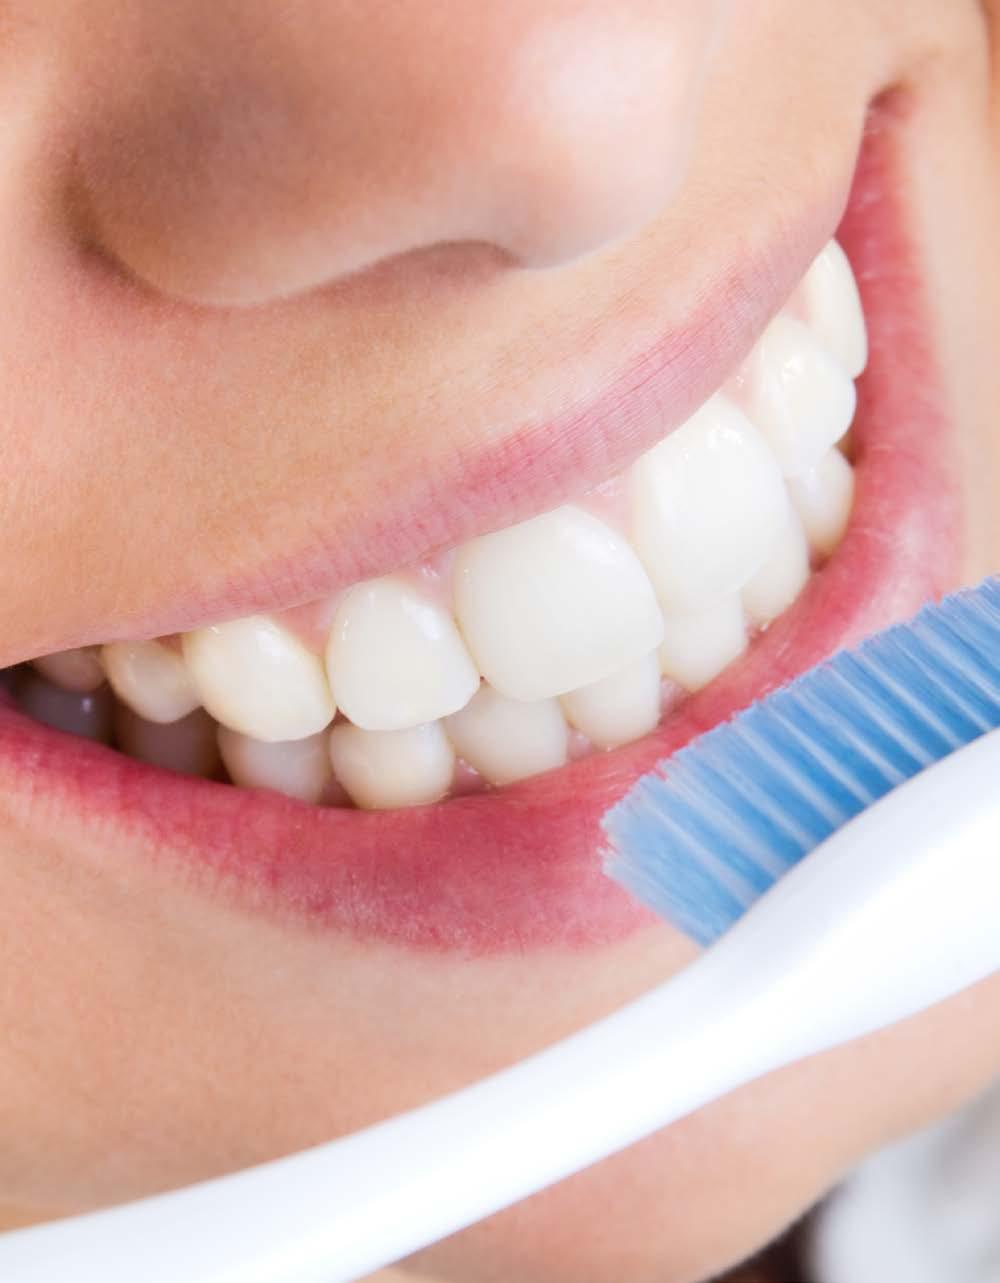 Saúde Bucal É muito importante manter a nossa boca saudável e bonita, cuidando dos nossos dentes e gengivas.